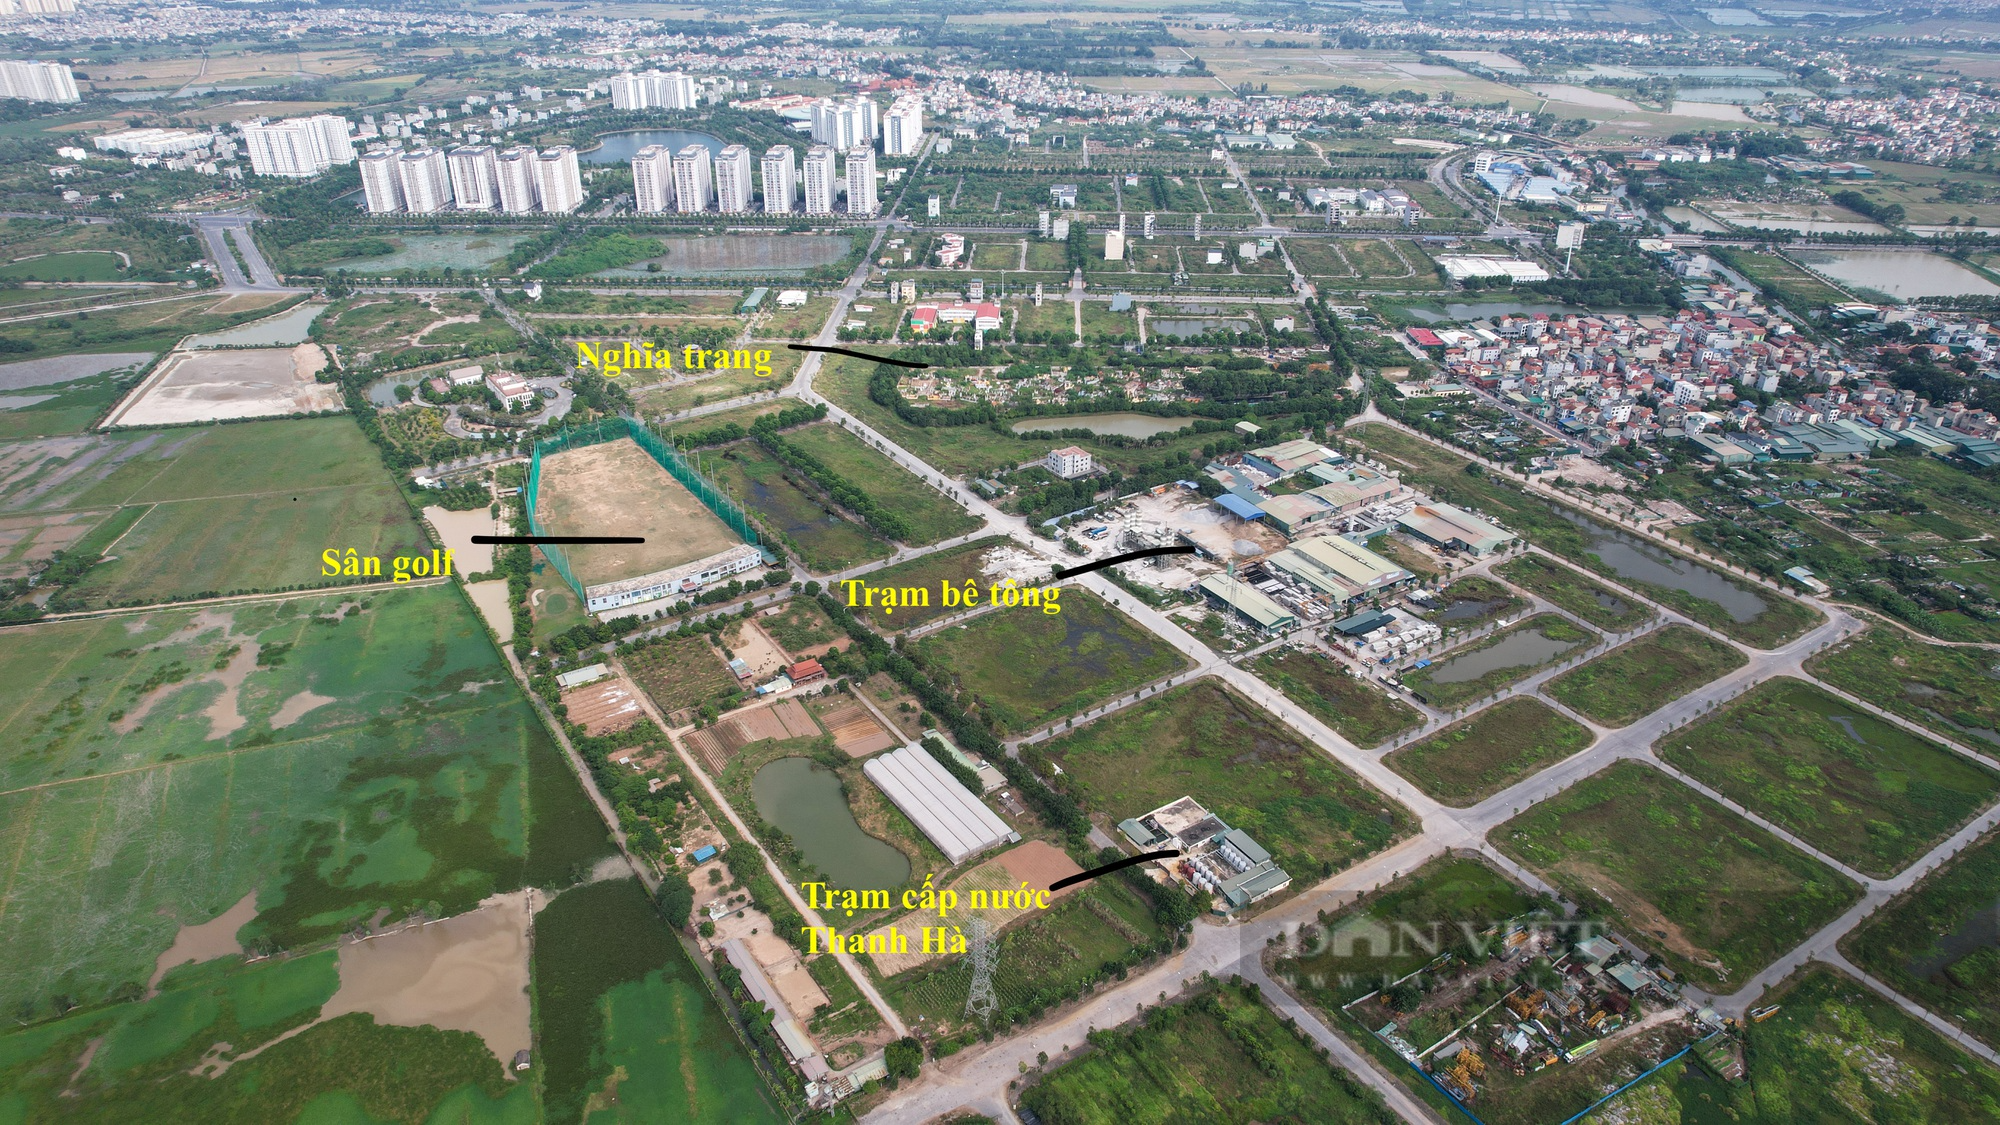 Hình ảnh trạm cấp nước Thanh Hà bị người dân phản đối vì gần nghĩa trang và mương ô nhiễm - Ảnh 4.